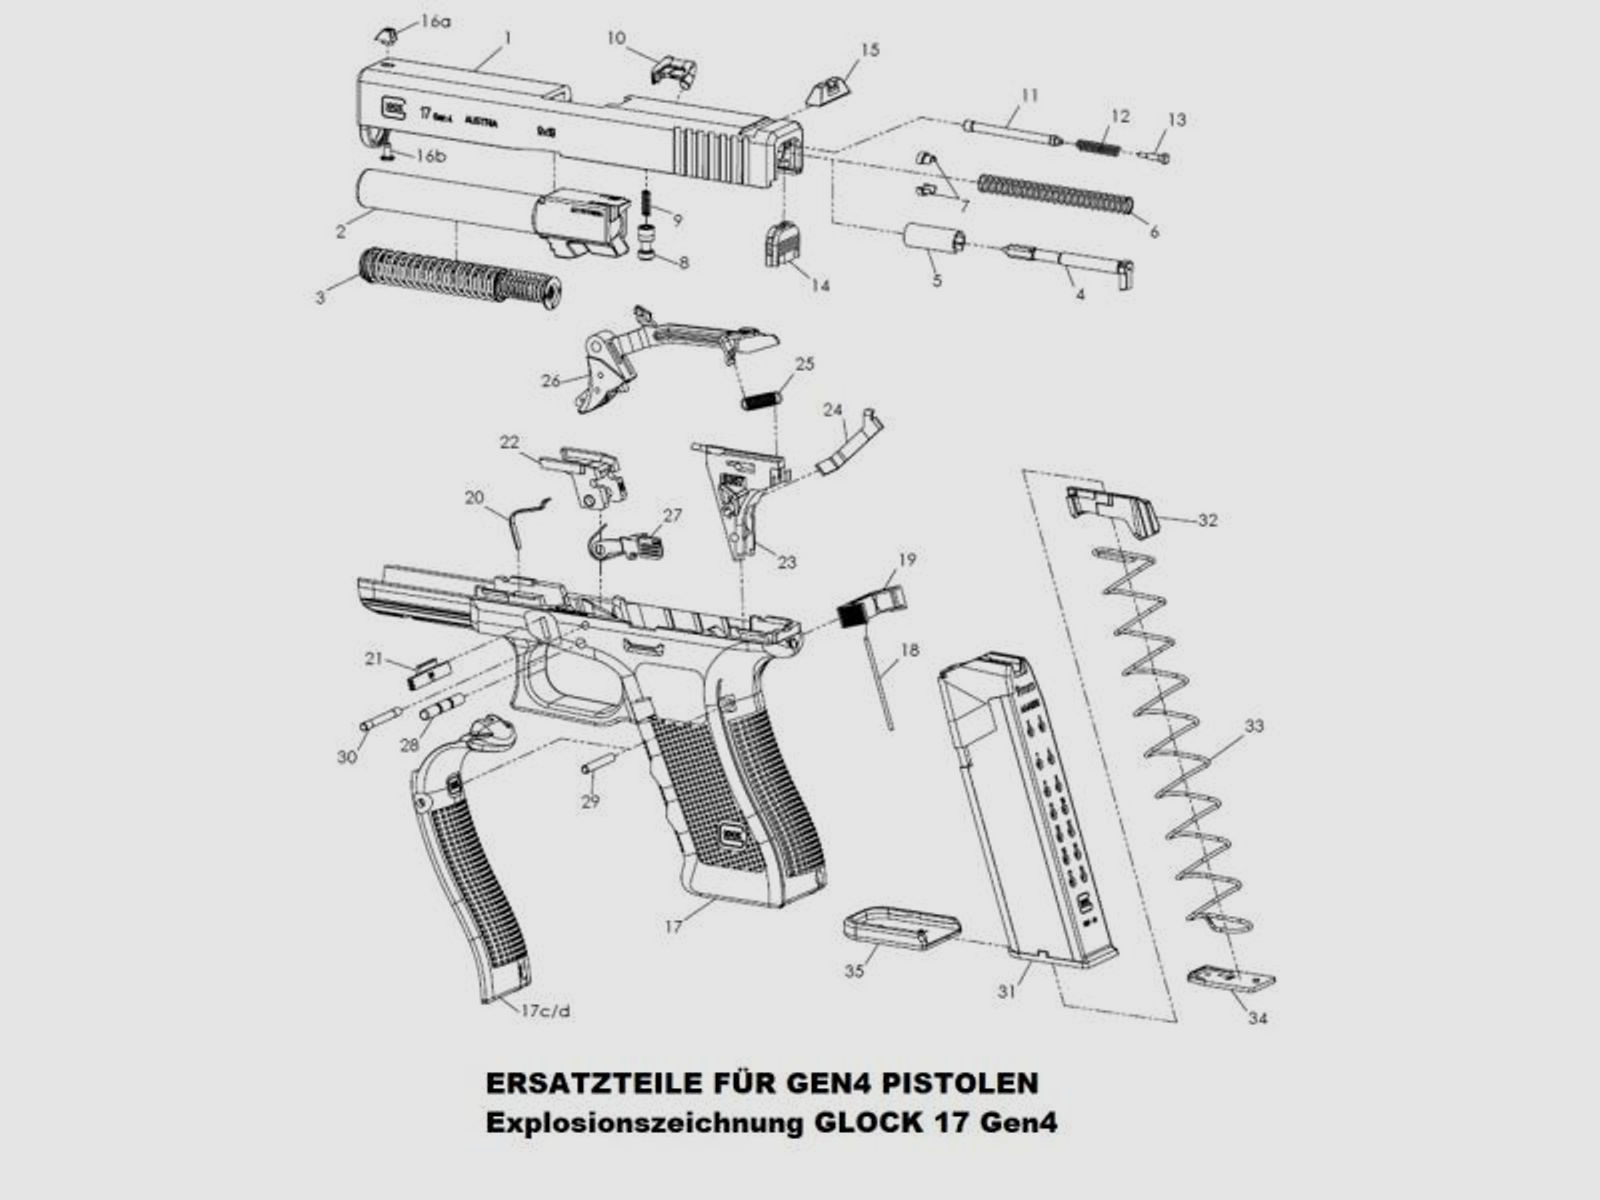 GLOCK Tuning/Ersatzteil f. Pistole Feder z. Verriegelung #20 f. 26,30,33,41 u.a. Gen3/4